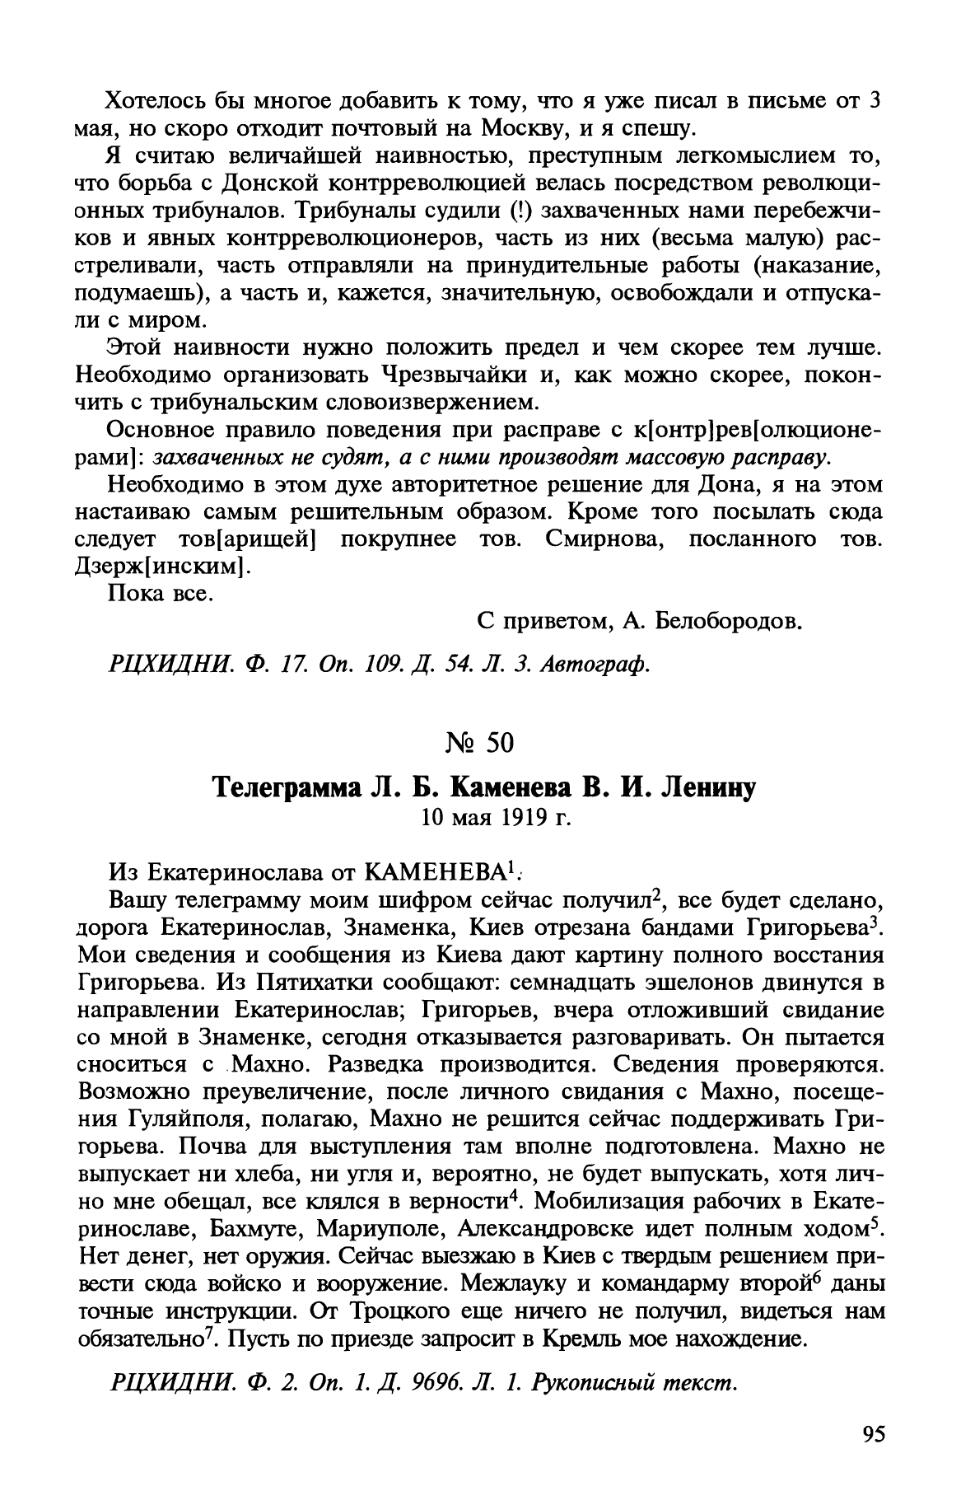 50. Телеграмма Л. Б. Каменева В. И. Ленину. 10 мая 1919 г.